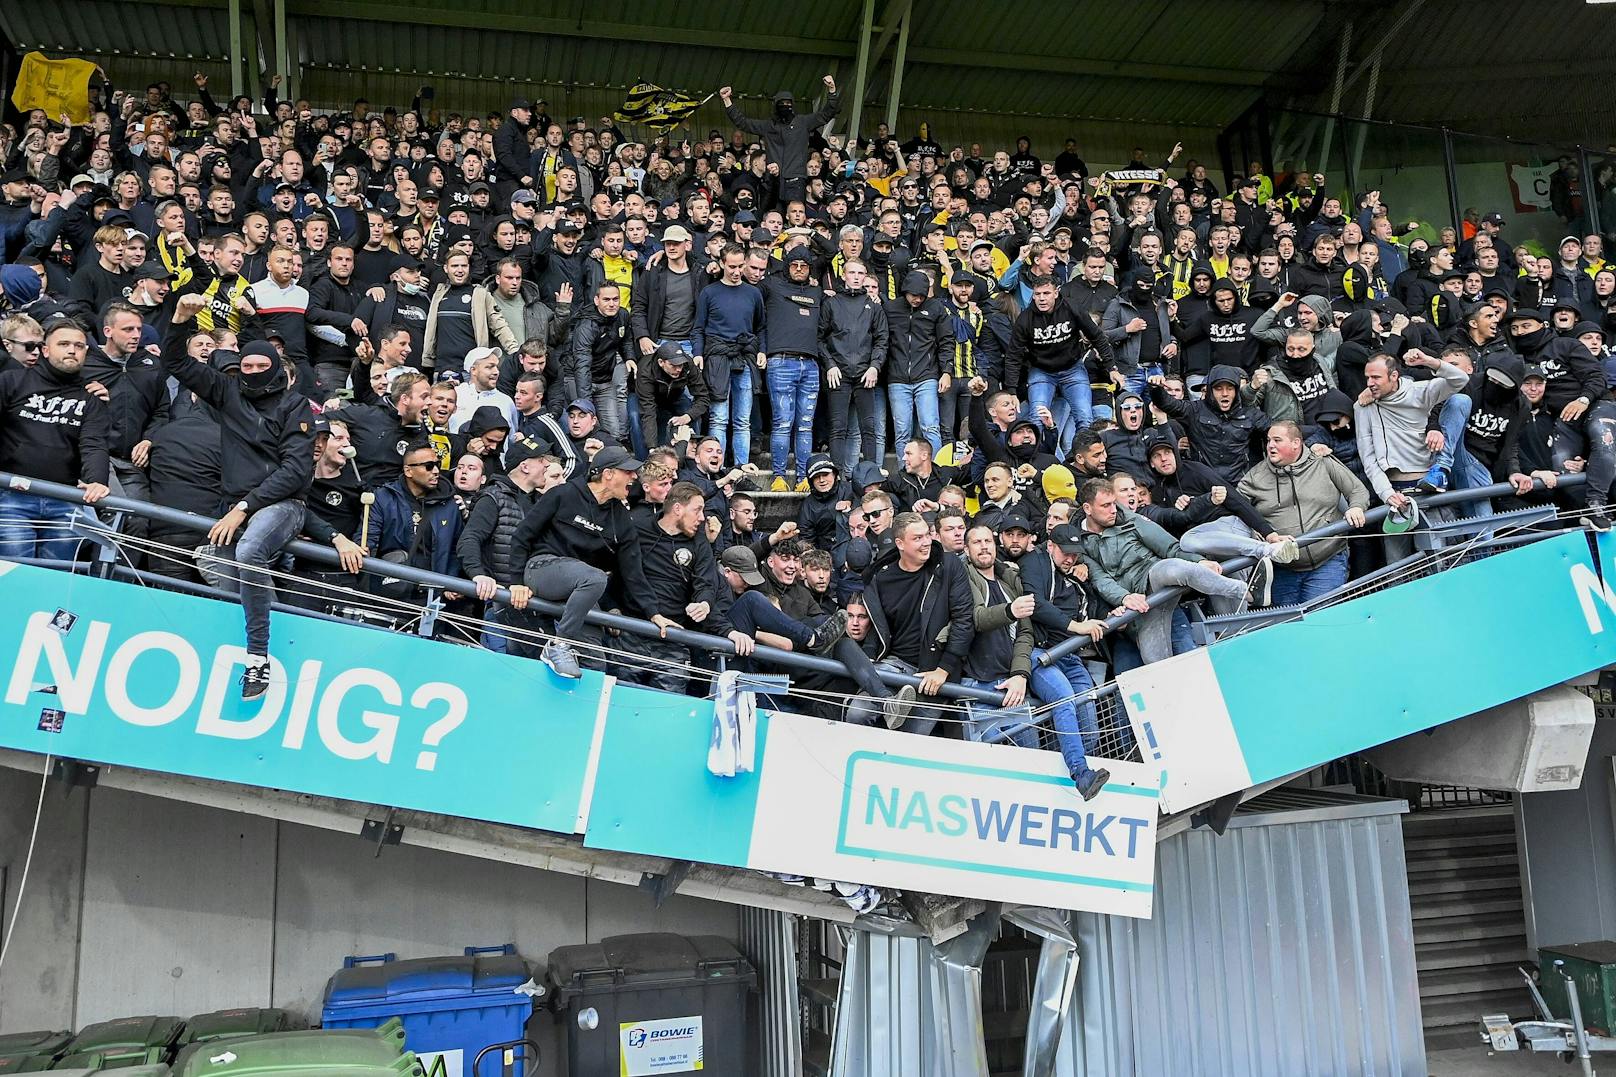 Arnheim schlug Nijmegen auswärts mit 1:0. Als die Fans feierten, sackte die Tribüne ab.